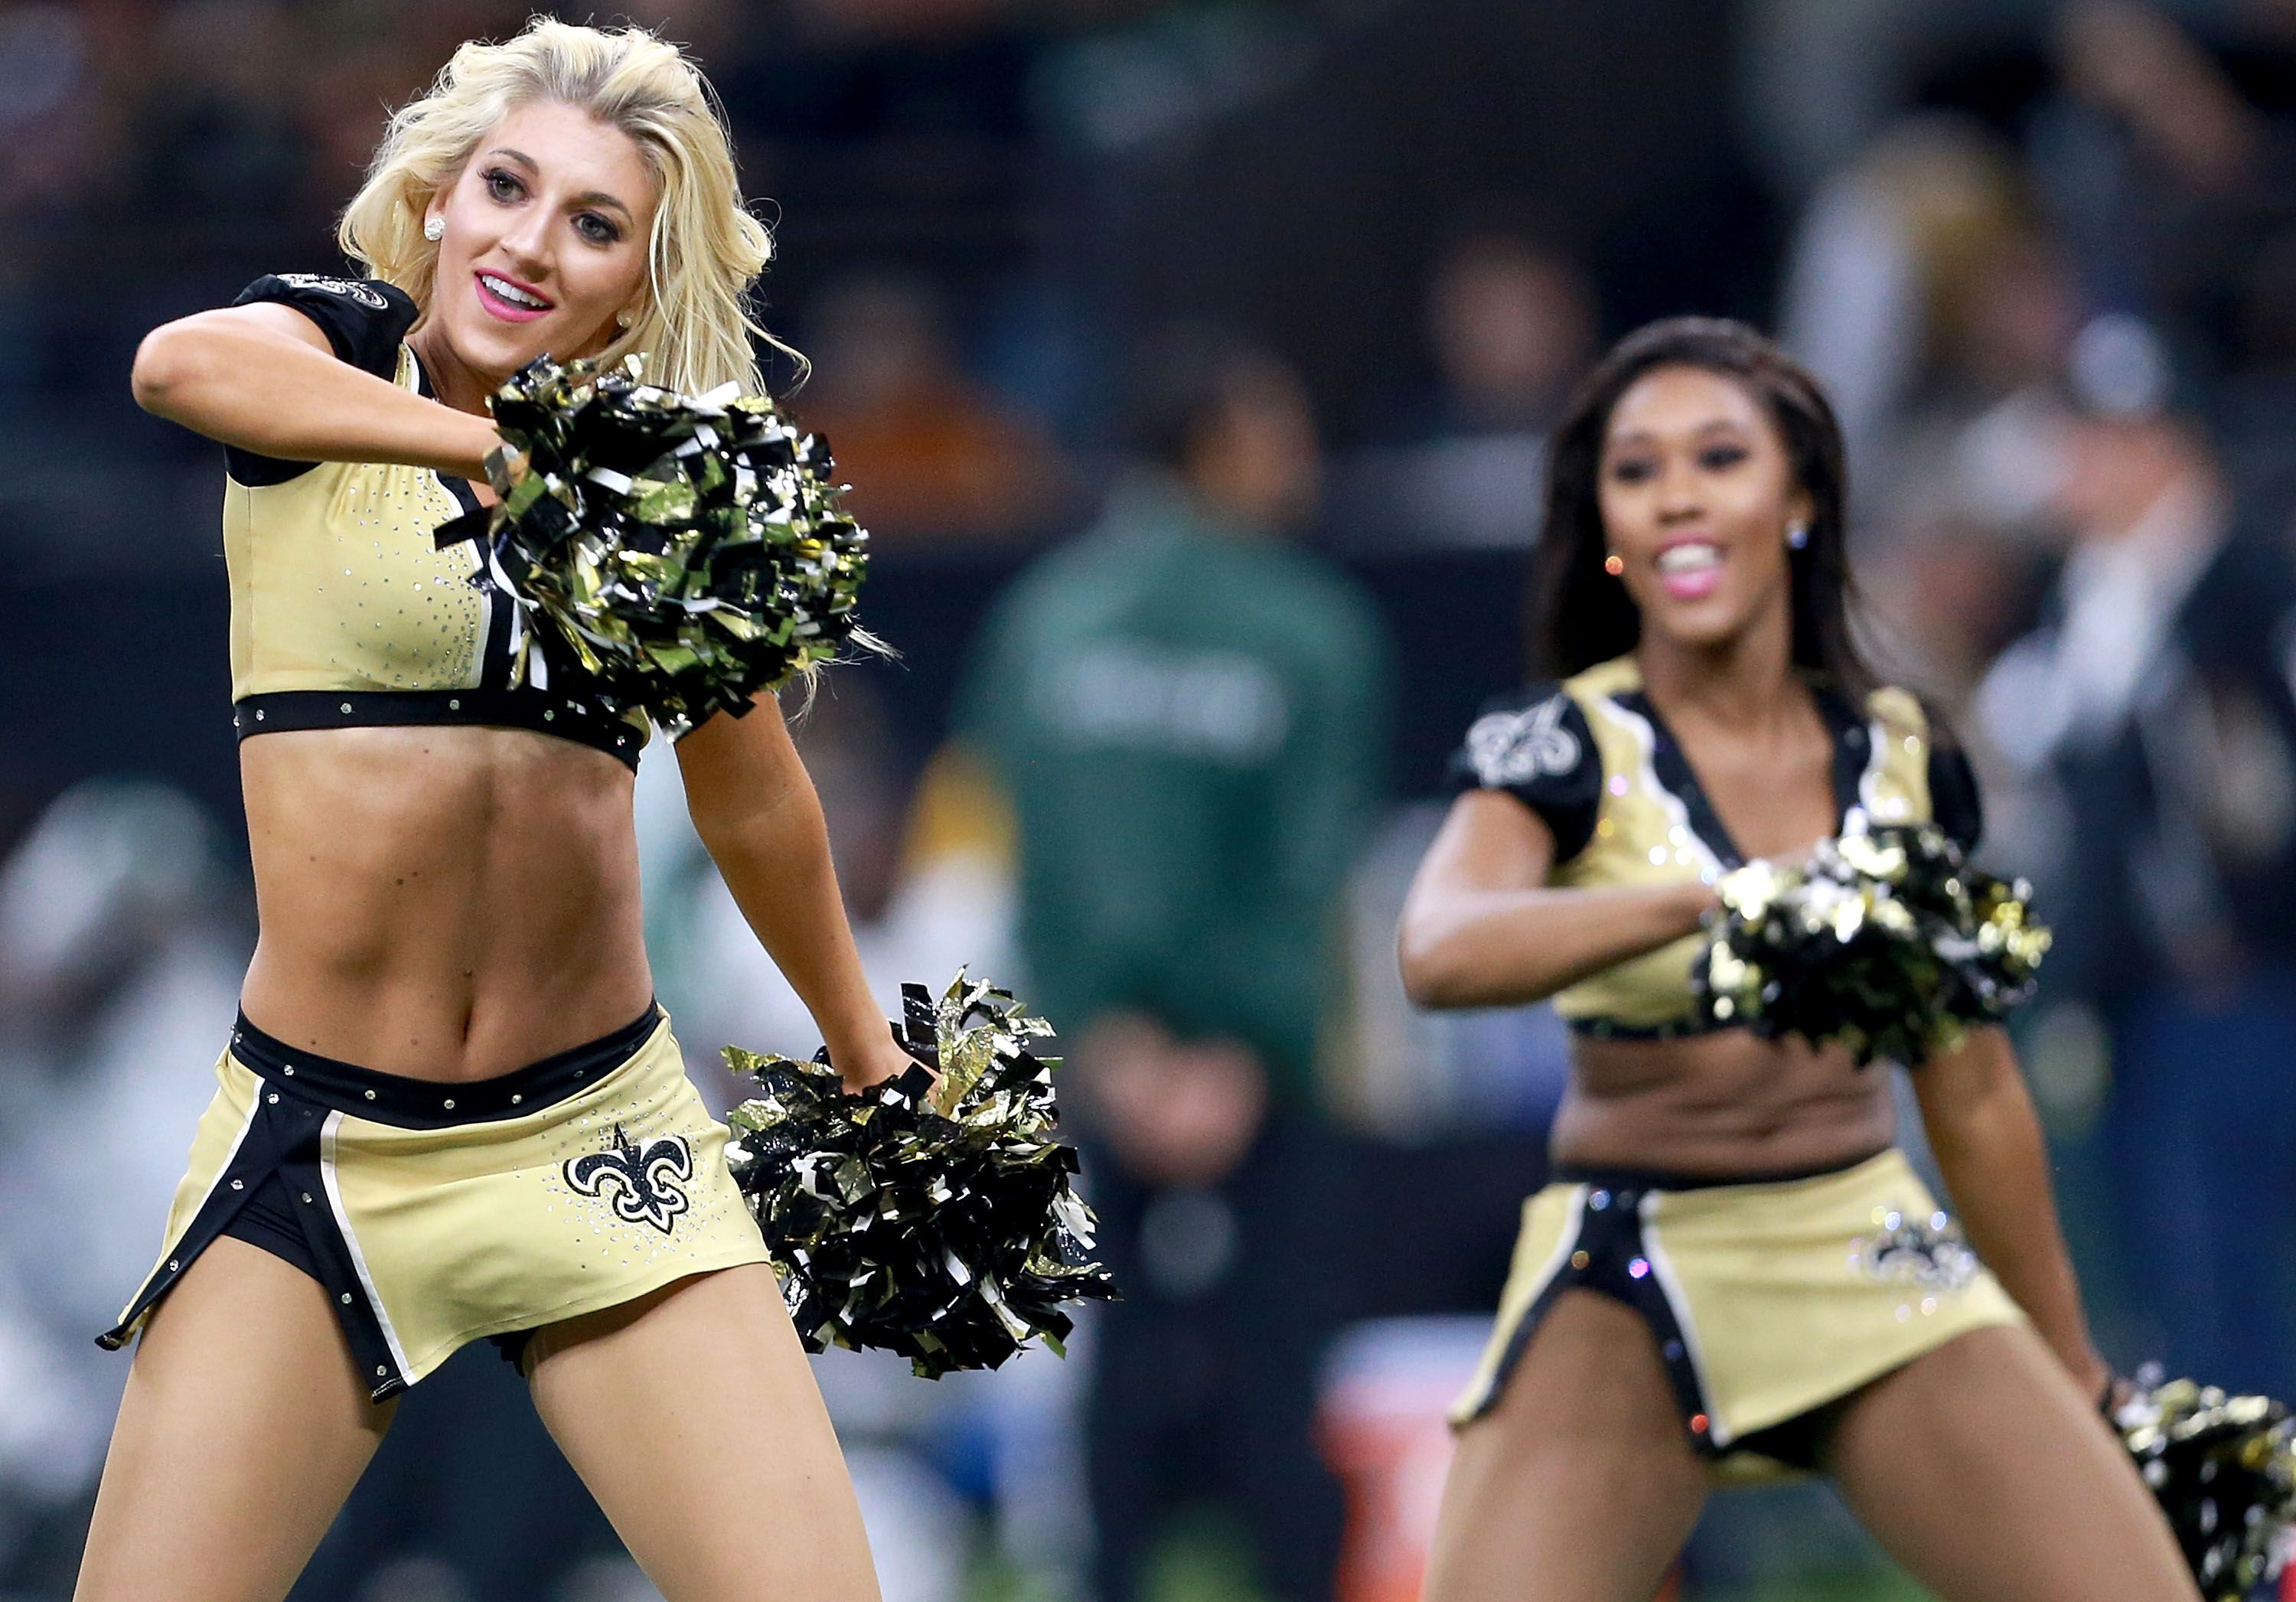 the NFL cheerleaders NFL Cheerleaders Are Held to Shocking NFL cheerleaders...